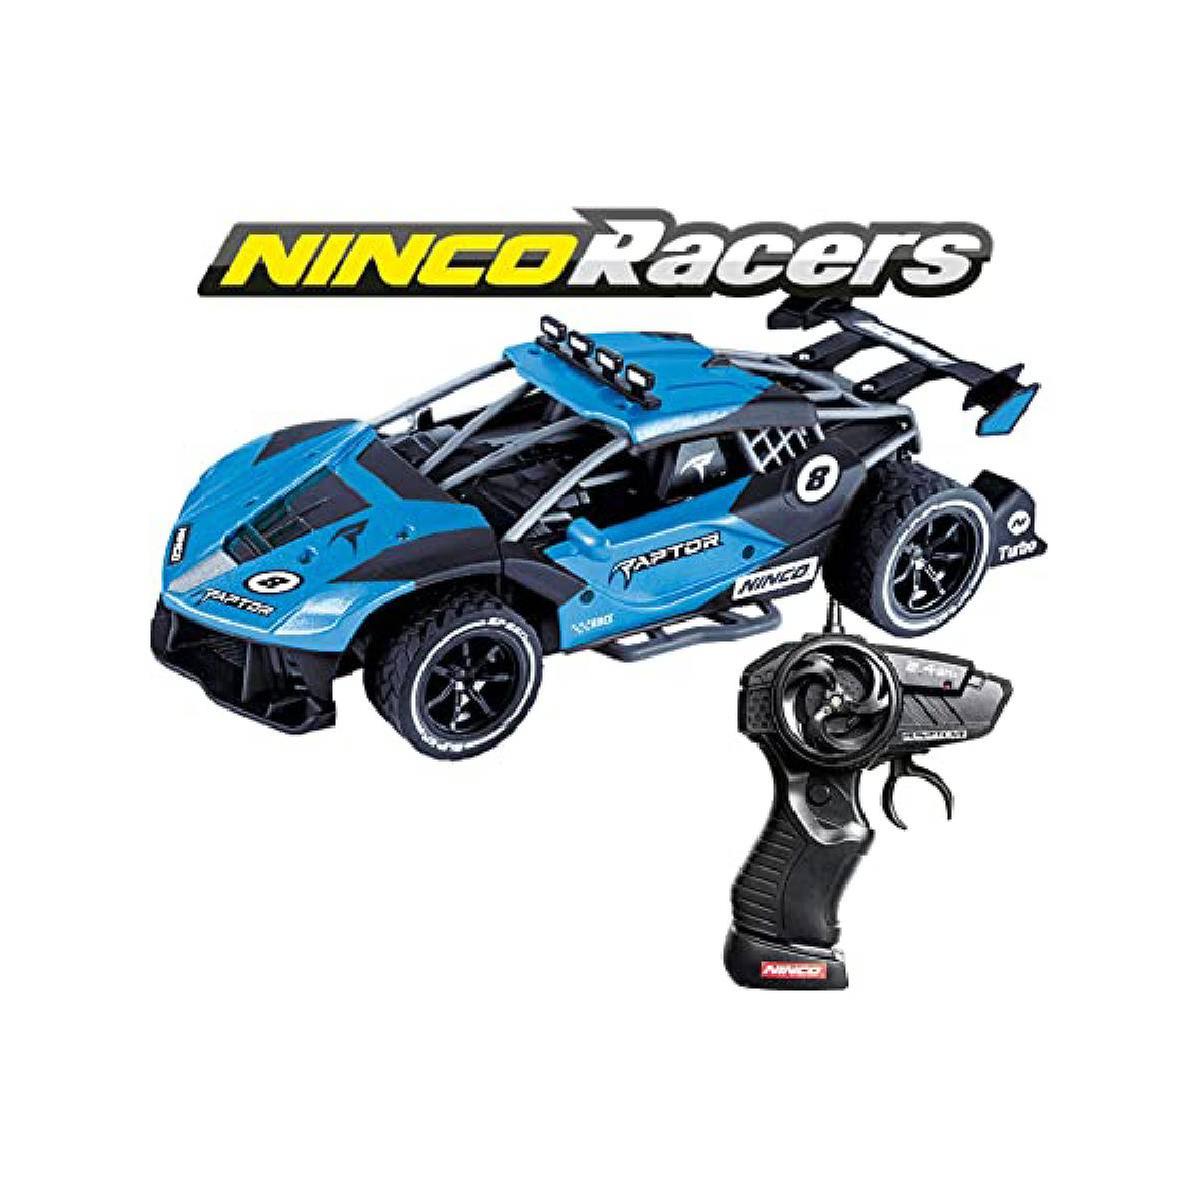 Ninco Racers - Coche Raptor | Misc R/c | Toys"R"Us España